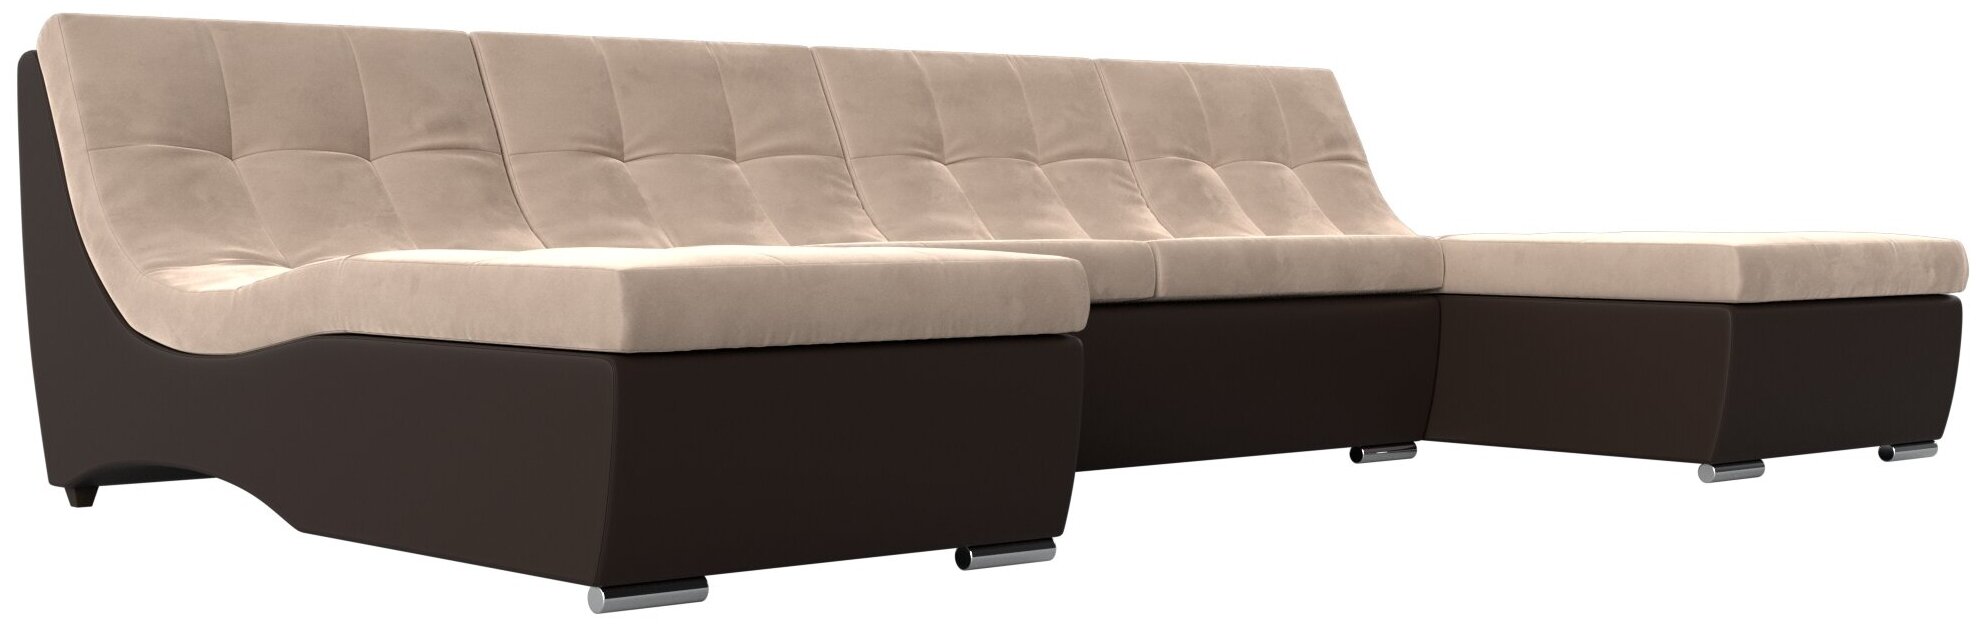 П-образный модульный диван Монреаль, Велюр, Модель 111547